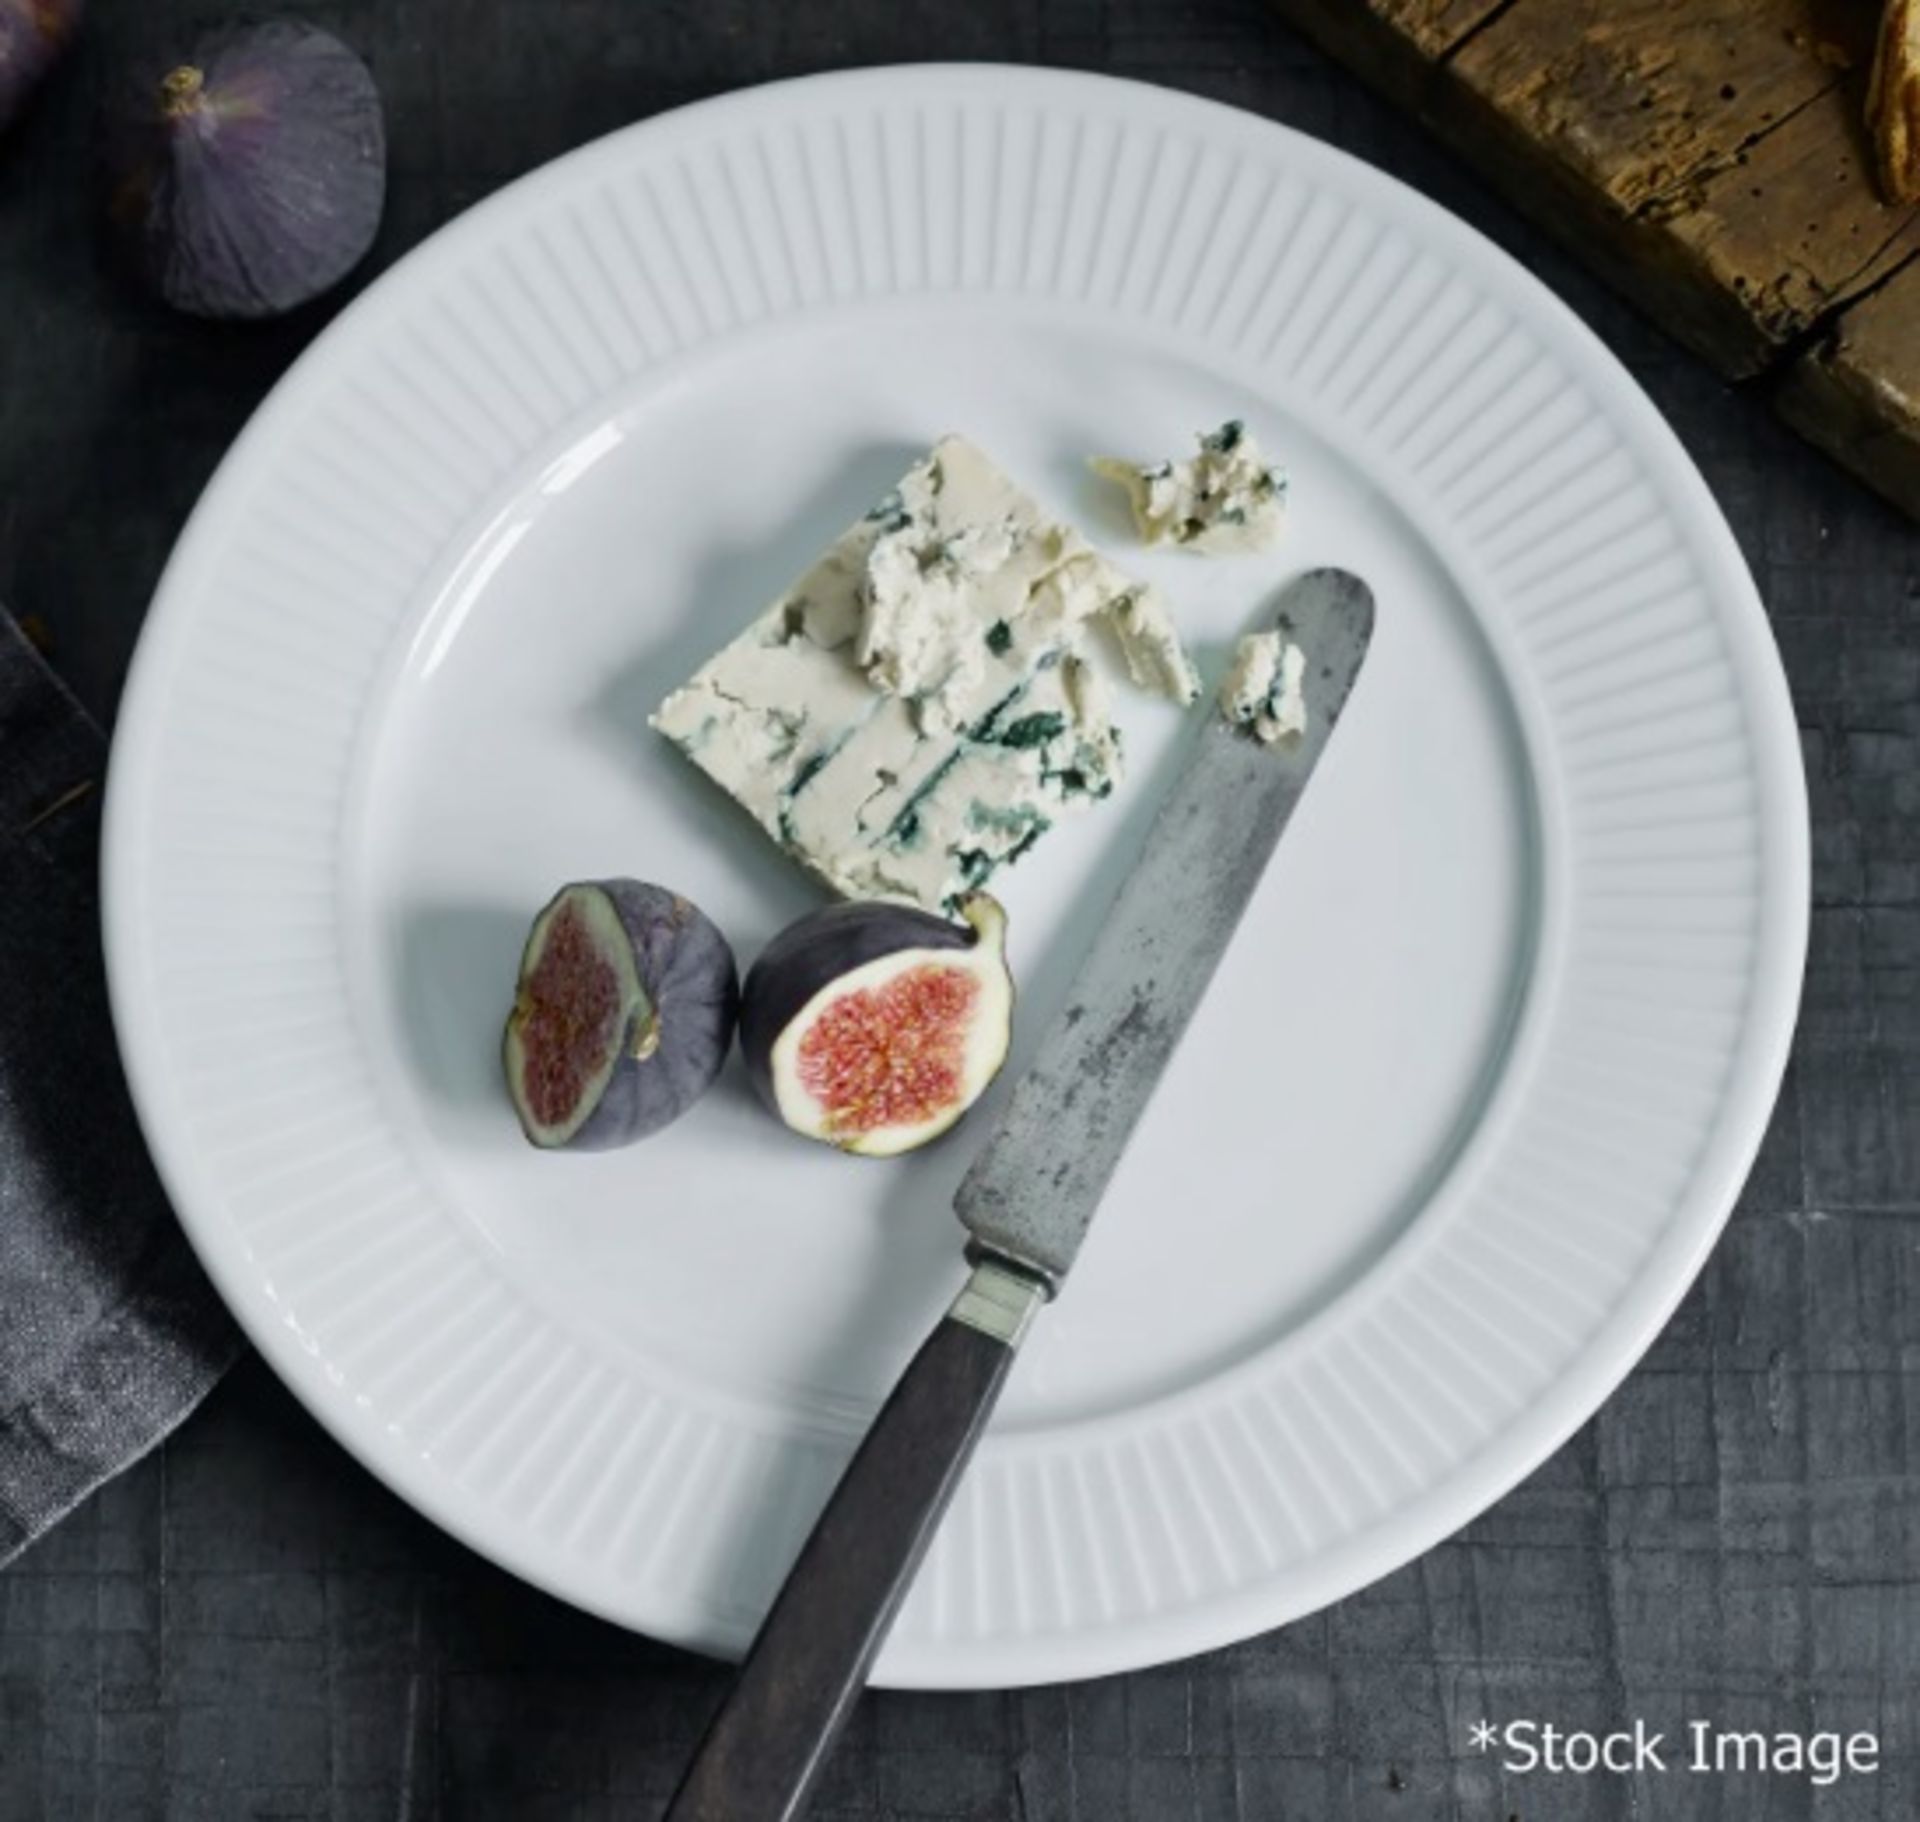 30 x PILLIVUYT 'Plisse' Porcelain Salad / Dessert Plates With A Pleated Design - Dimensions: 25.